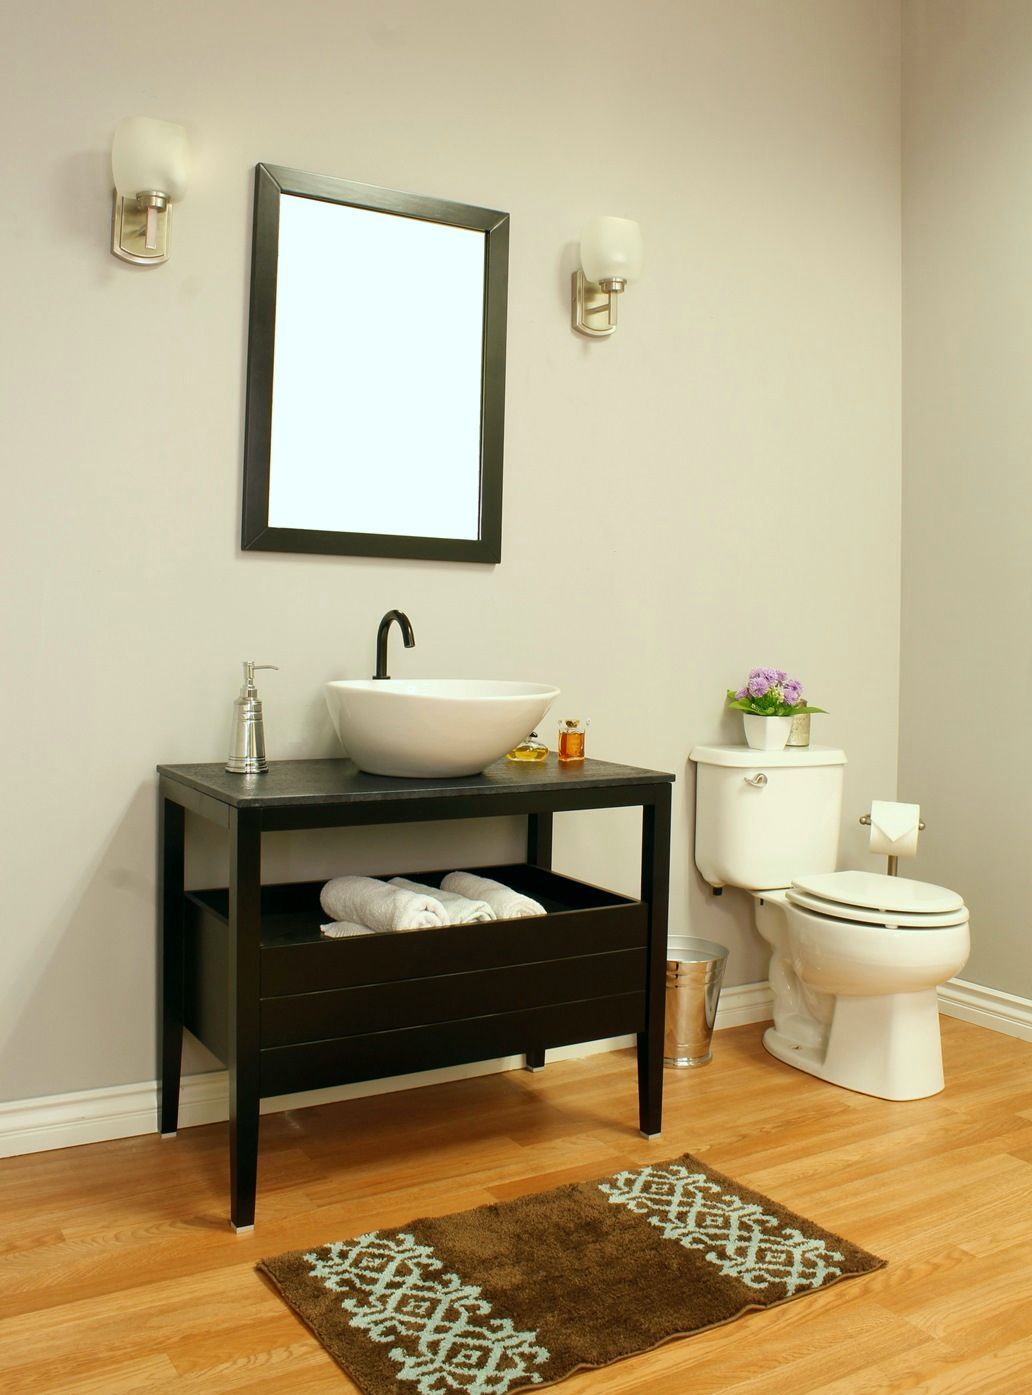 35.5" In Single Sink Vanity Wood Black - Luxe Bathroom Vanities